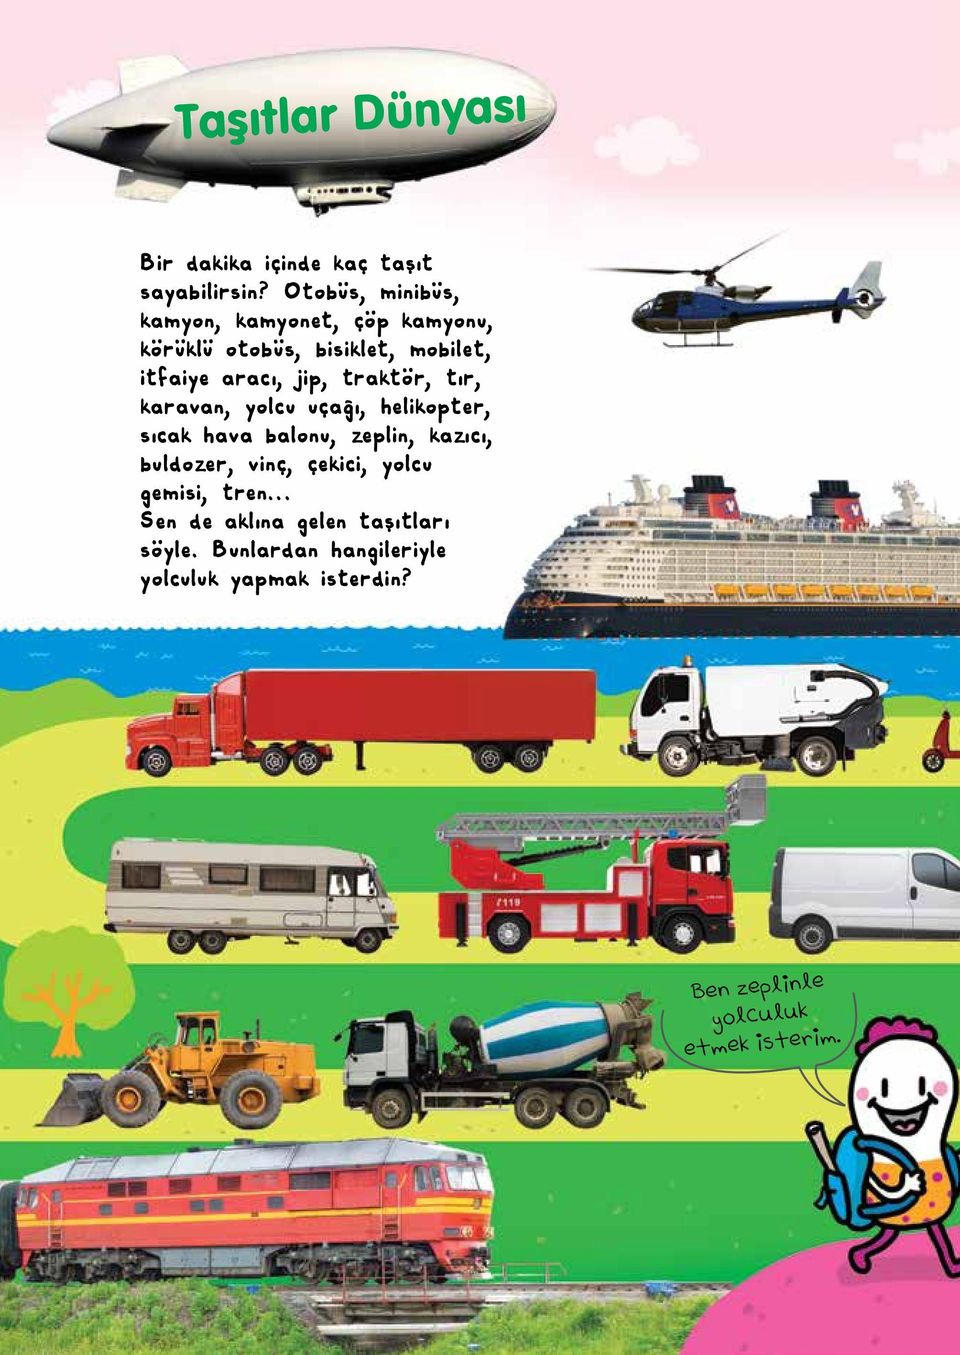 traktör, tır, karavan, yolcu uçağı, helikopter, sıcak hava balonu, zeplin, kazıcı, buldozer, vinç,